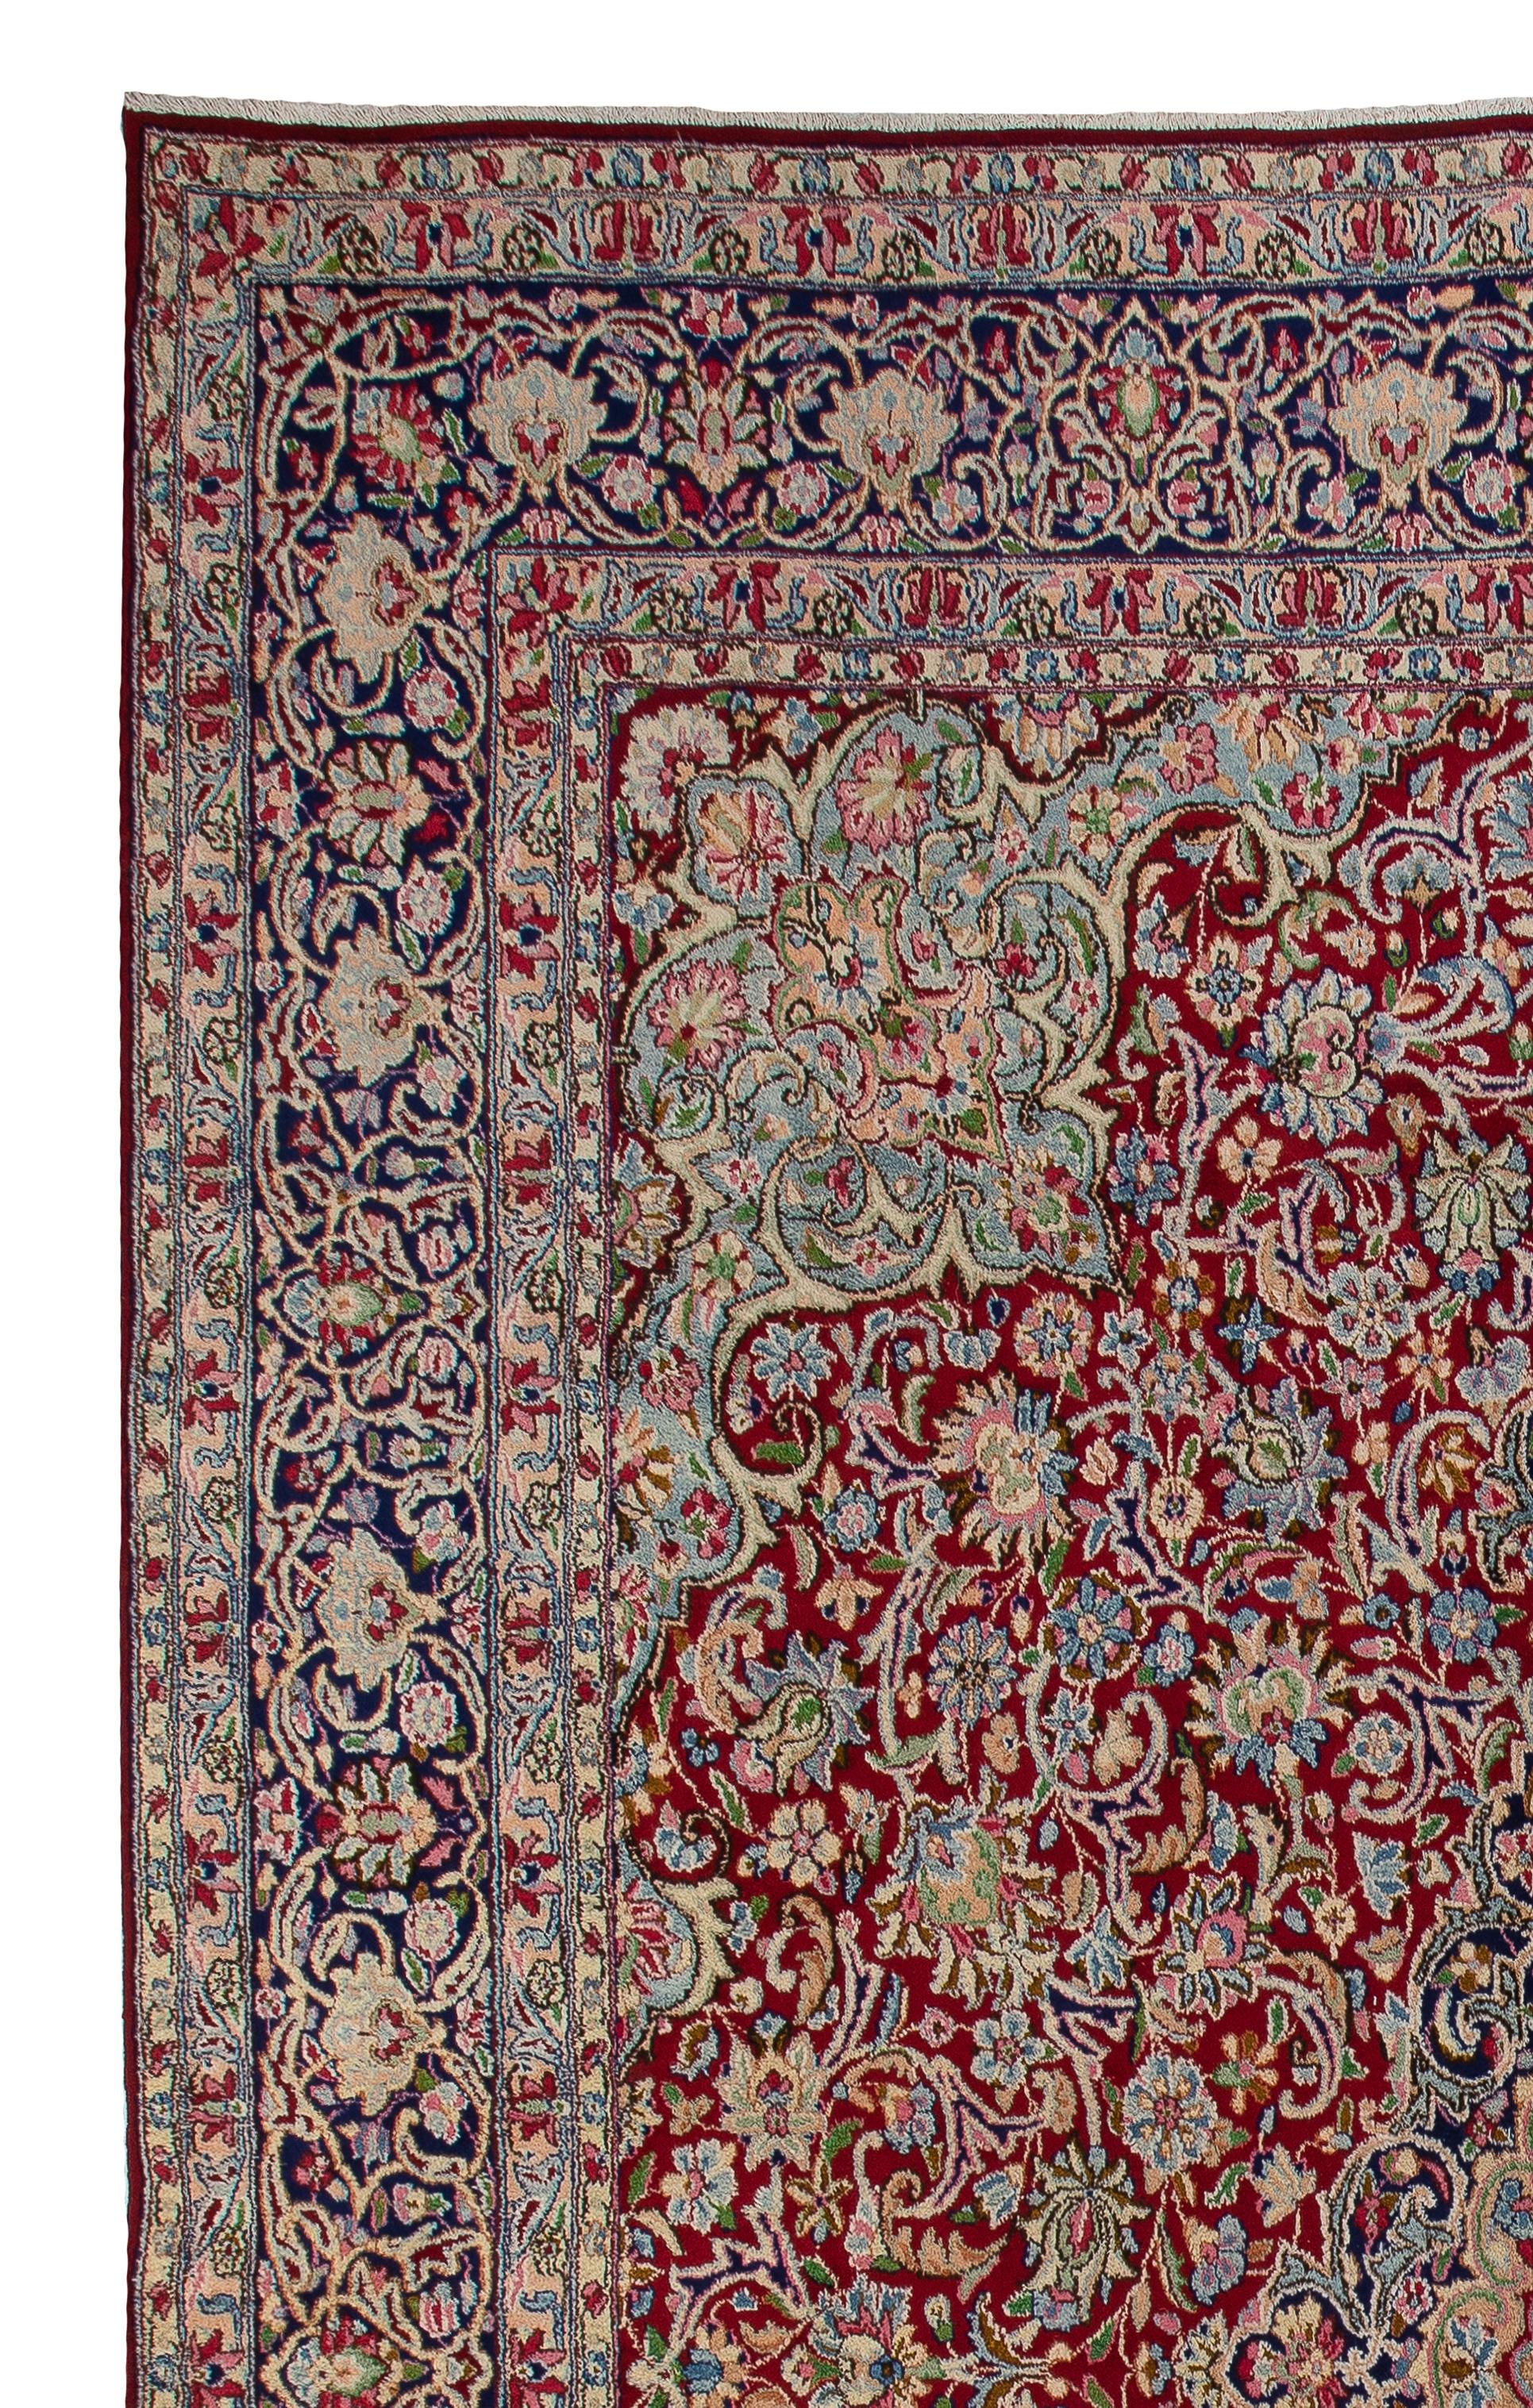 Antiker persischer Kashan-Teppich. Feiner traditioneller Orientteppich.
 Fein handgeknüpft mit gleichmäßigem, mittelhohem Wollflor auf Baumwollgrund. Sehr guter Zustand. Robust und sowohl für Wohn- als auch für Geschäftsräume geeignet.